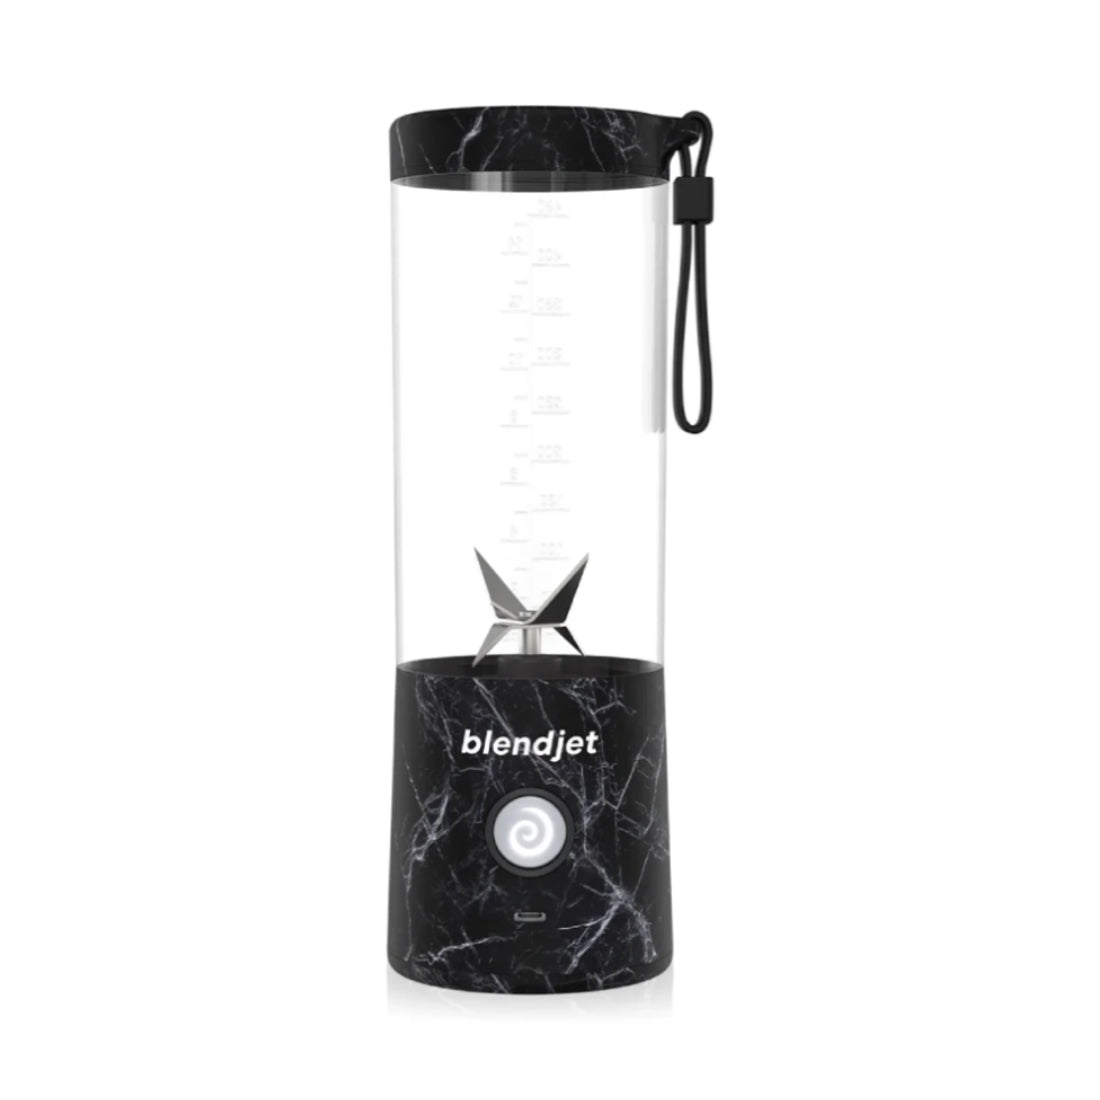 BlendJet 2 Portable Blender - Black Marble - خلاط